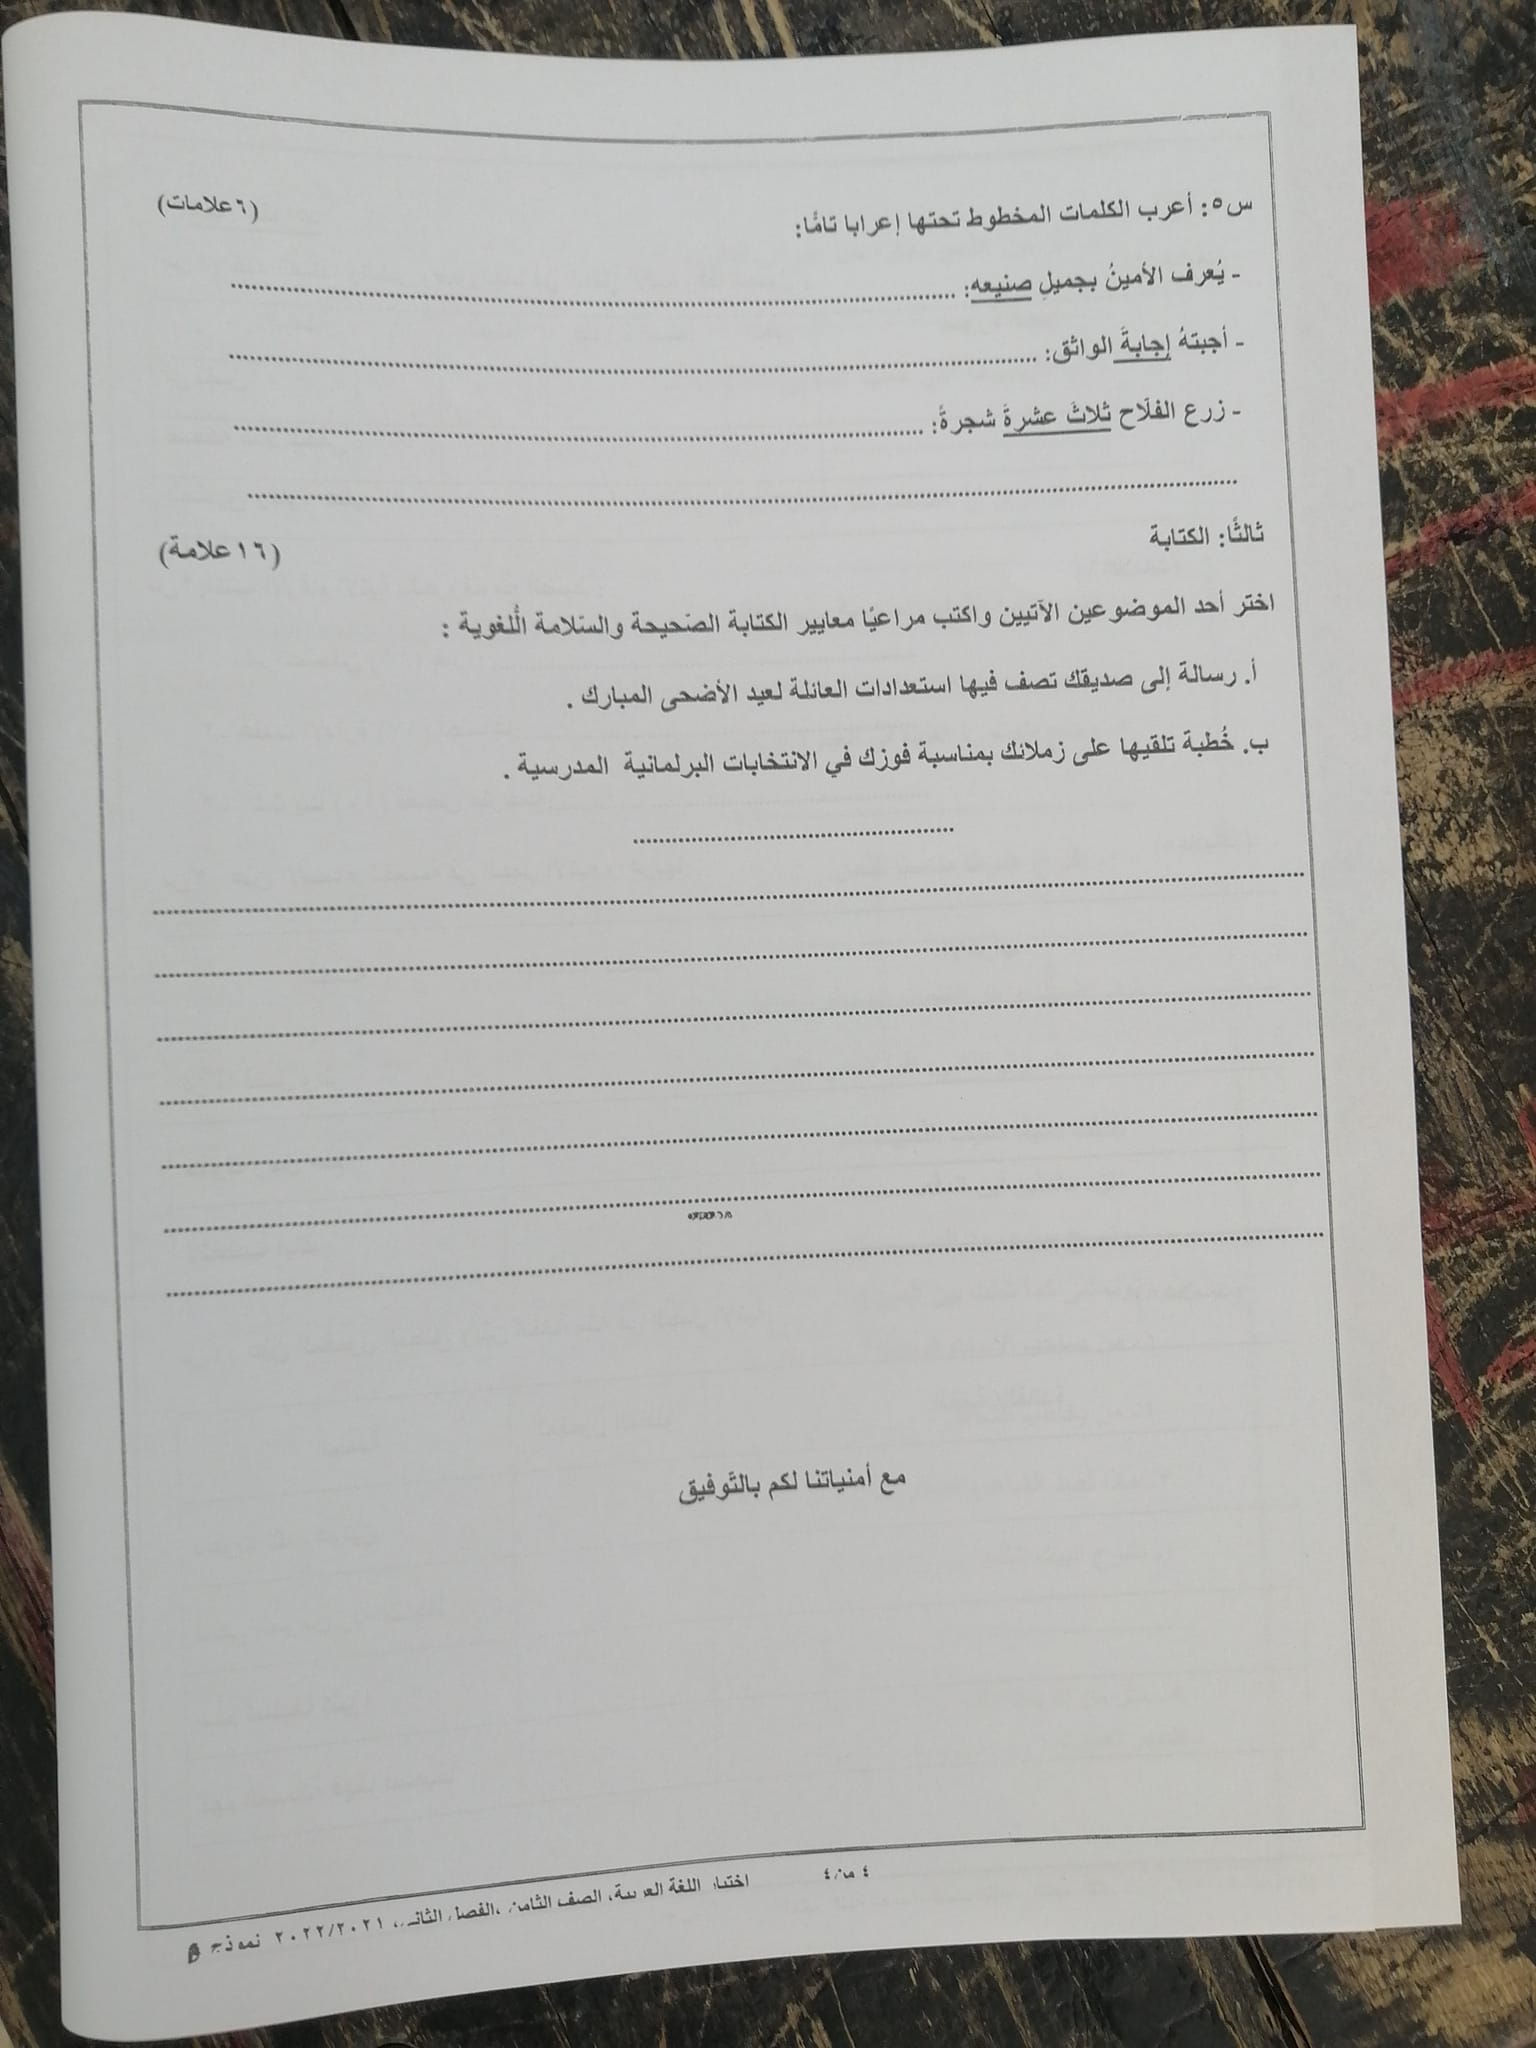 صور امتحان نهائي اللغة العربية للصف الثامن الفصل الثاني 2022 نموذج B وكالة